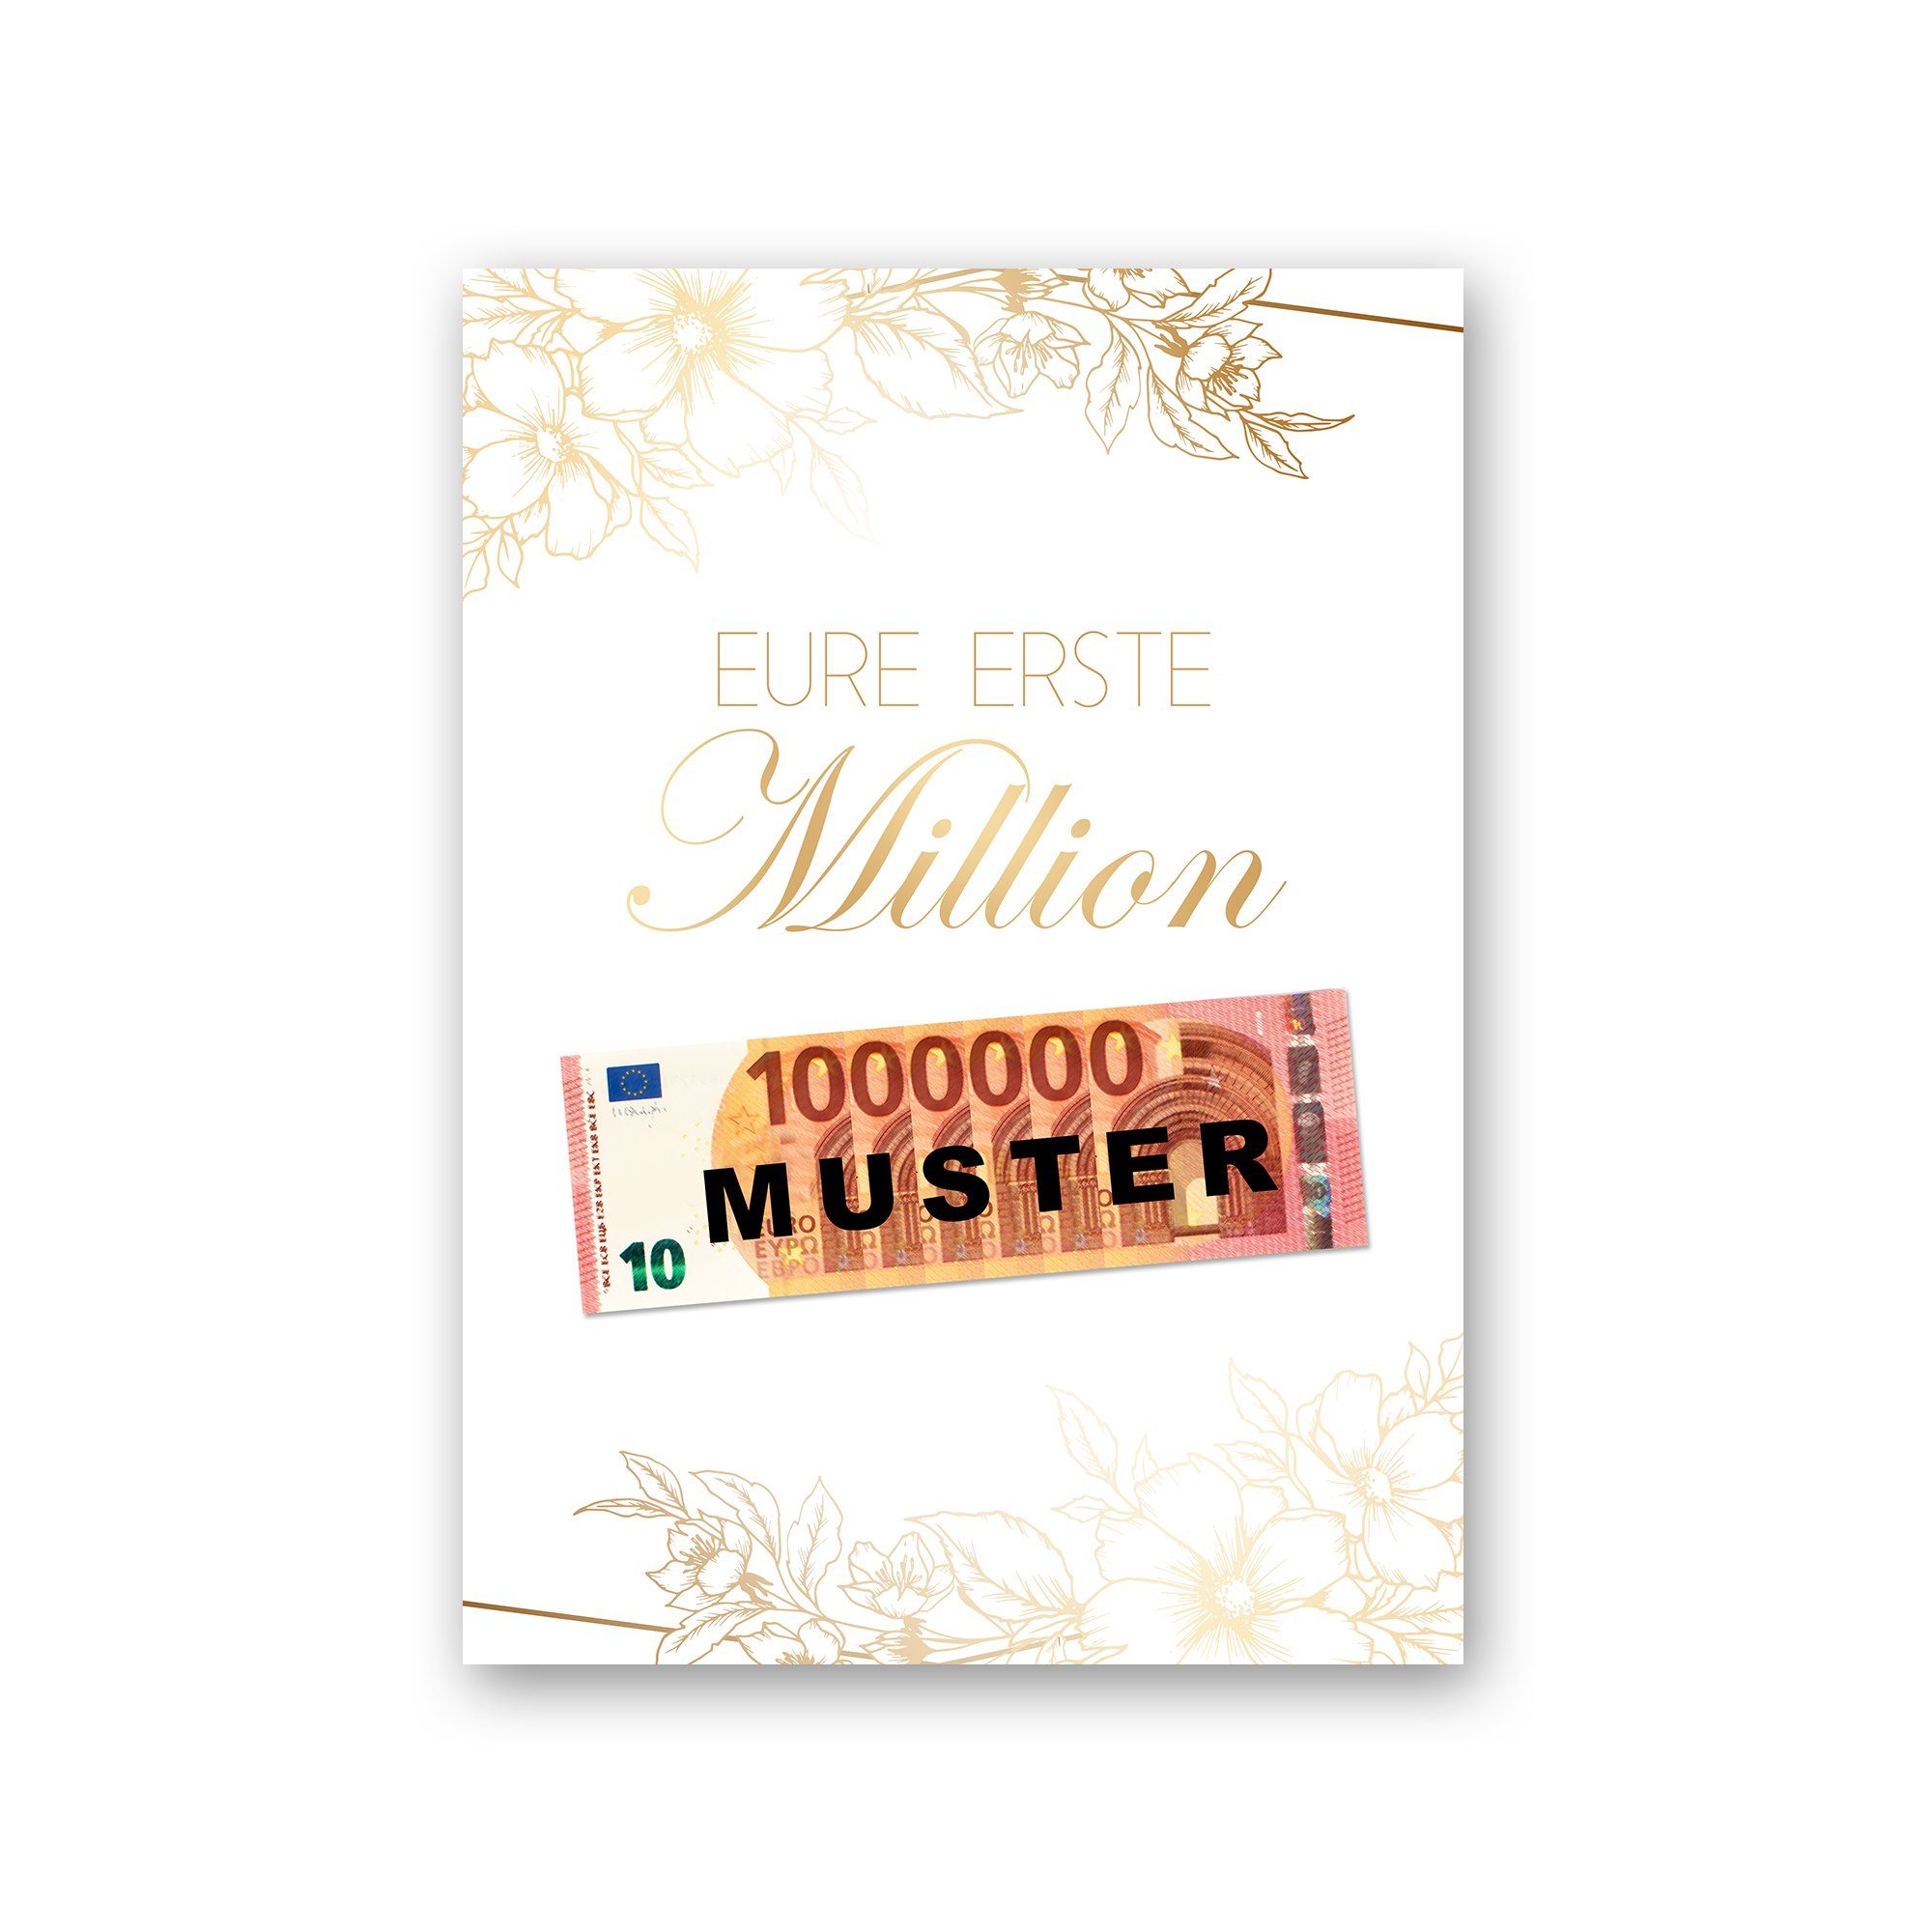 Kreative Feder Poster Premium Poster „Eure erste Million“ - Kunstdruck mit Blumen-Design, optional mit Rahmen; wahlweise DIN A4 oder DIN A3 natur Rahmen